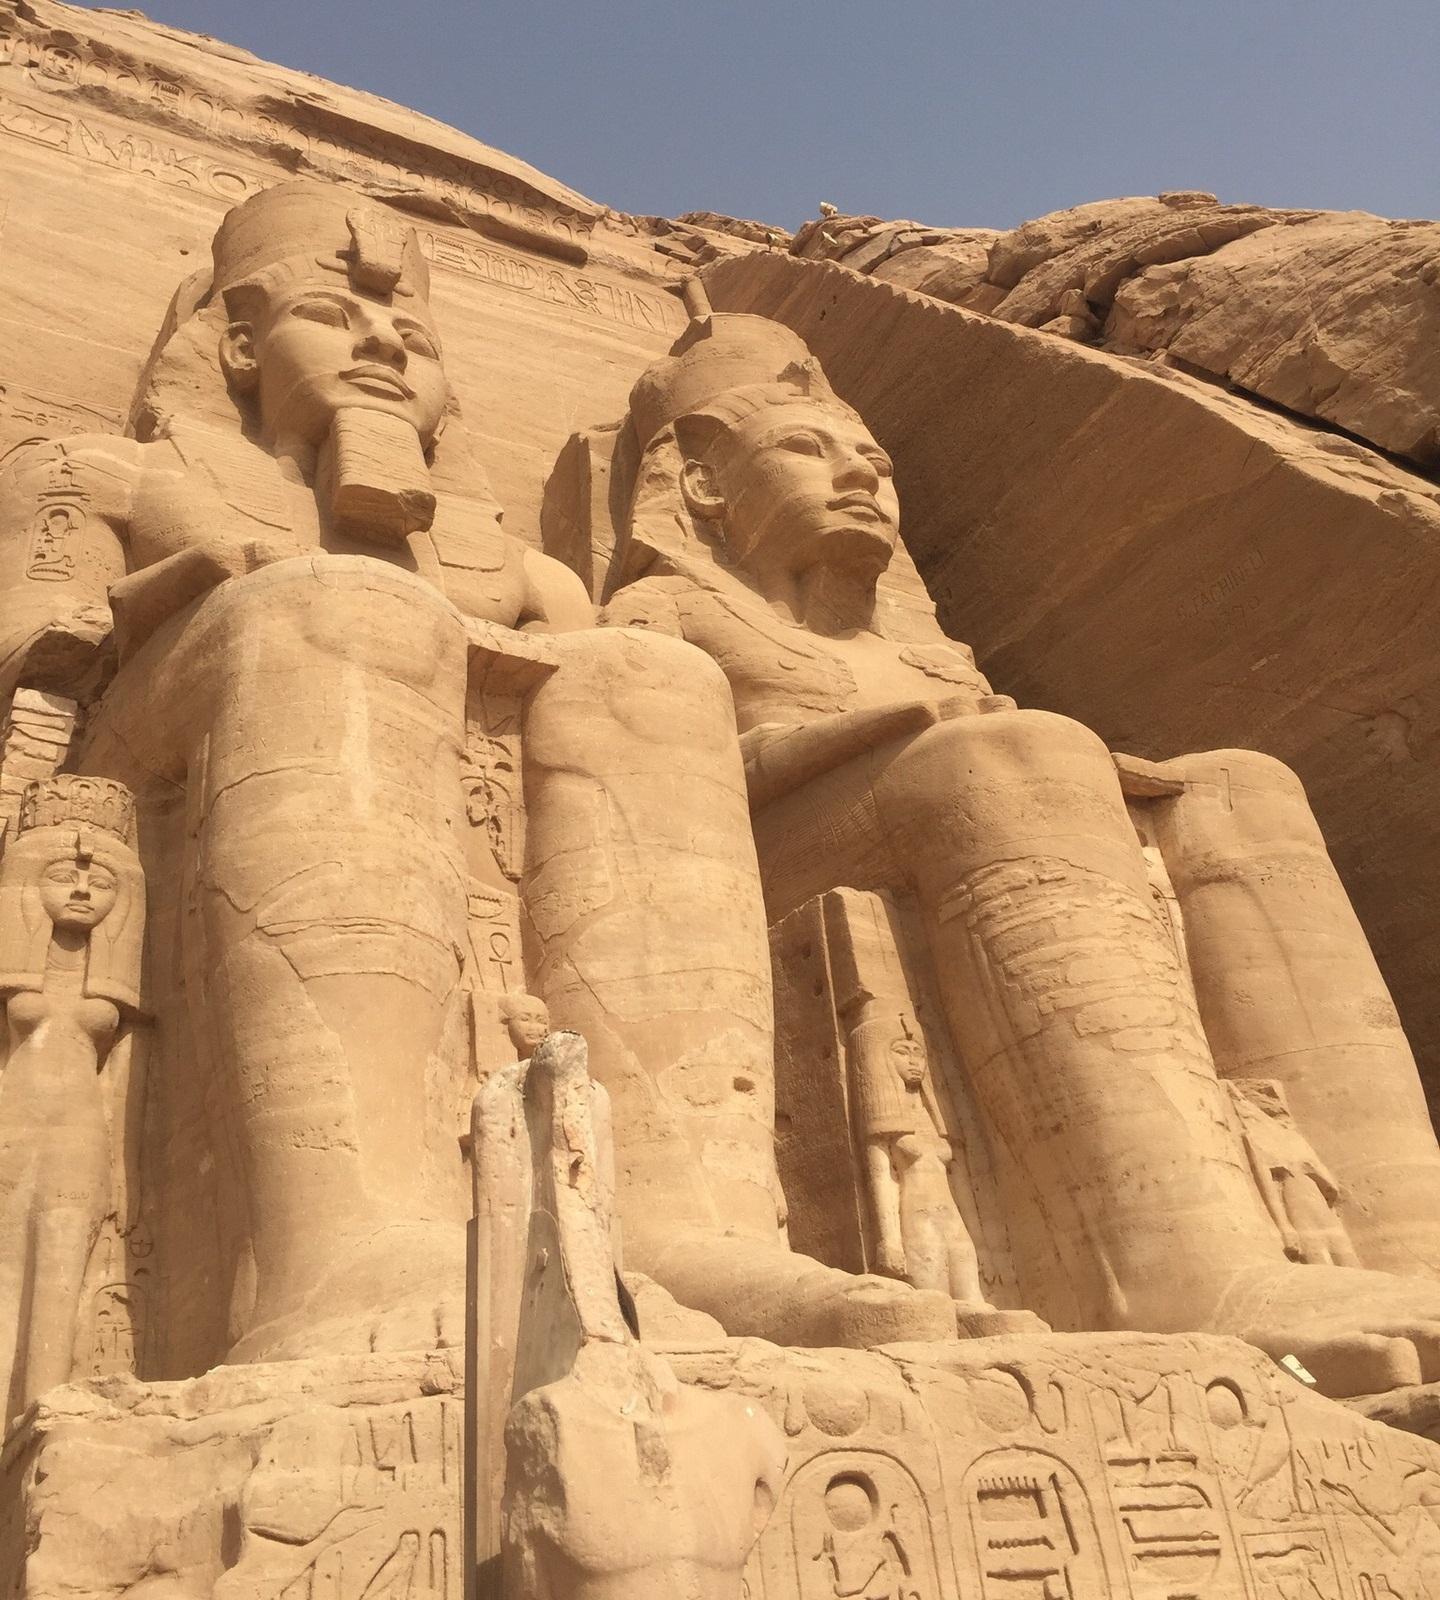 埃及-阿布辛贝神庙、哈索尔神庙：拉美西斯二世与爱妻的依崖凿建岩窟神庙【300多幅图】 - 知乎